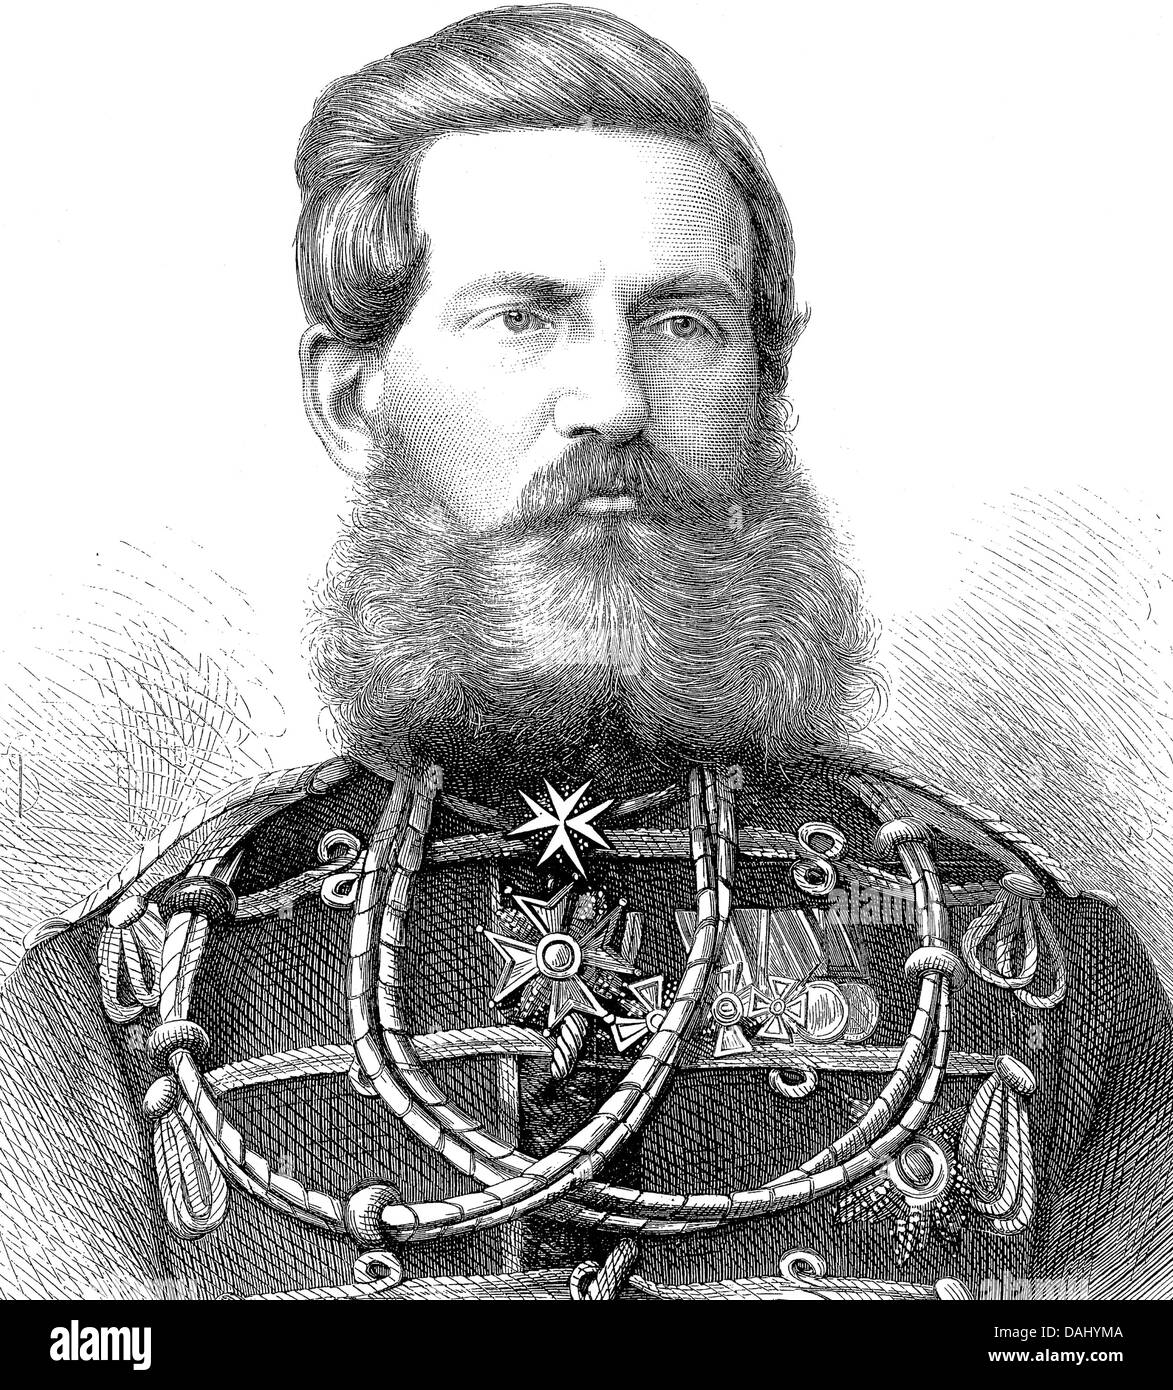 L'empereur allemand Frédéric III comme prince héritier en 1870 Banque D'Images